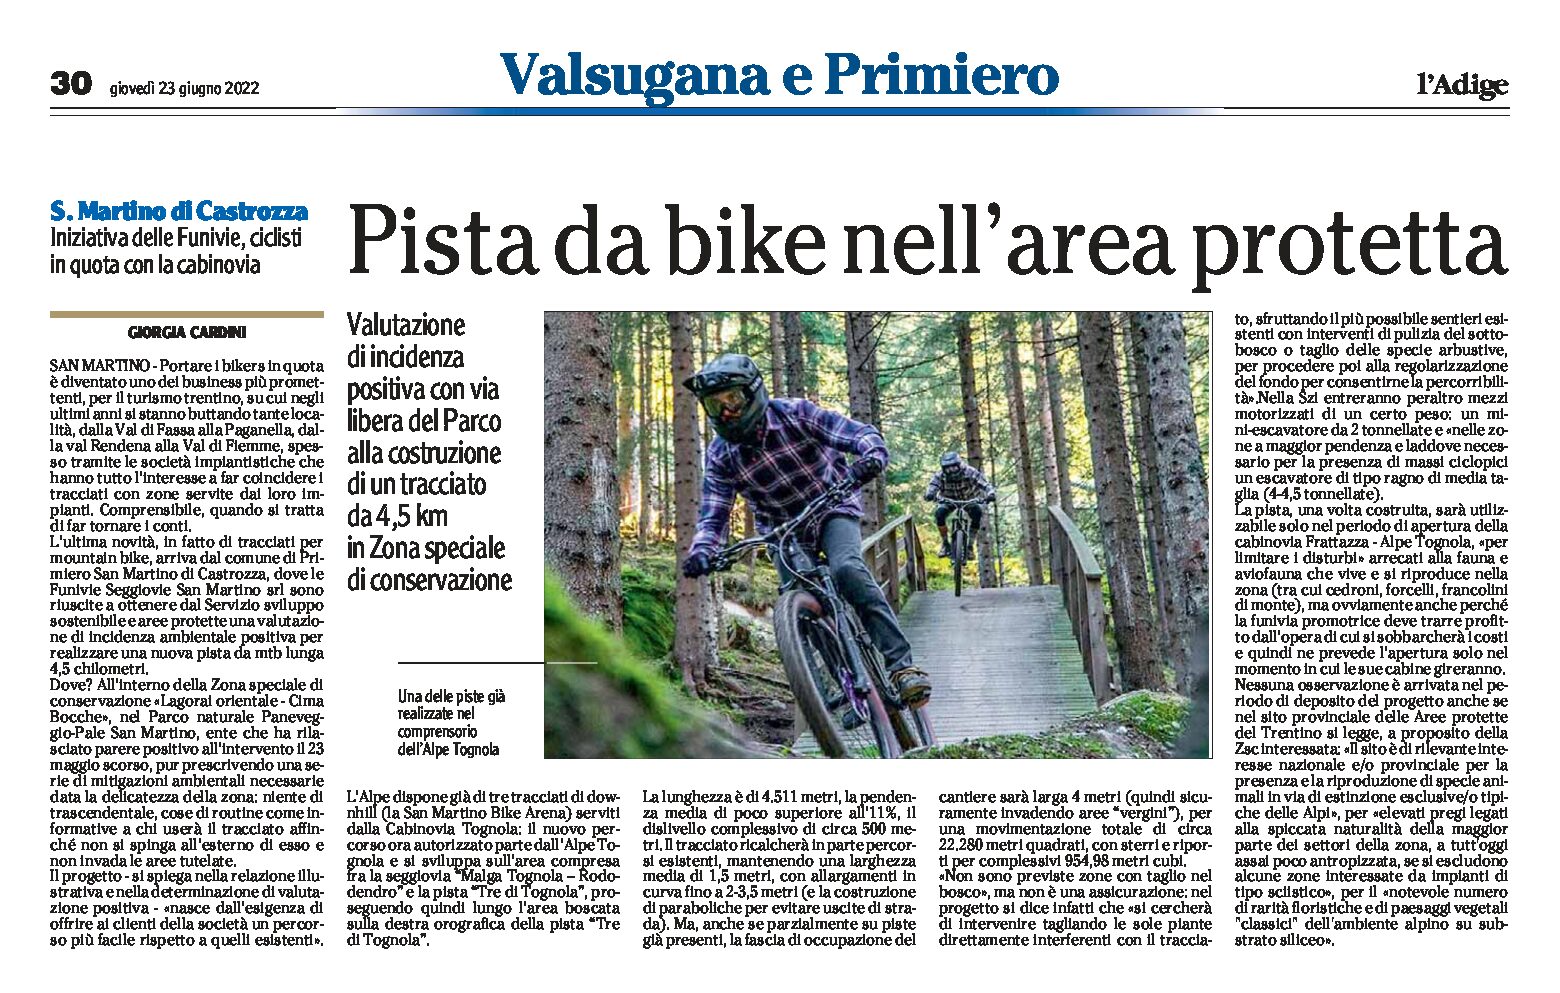 San Martino di Castrozza: pista da bike nell’area protetta. Via libera del Parco